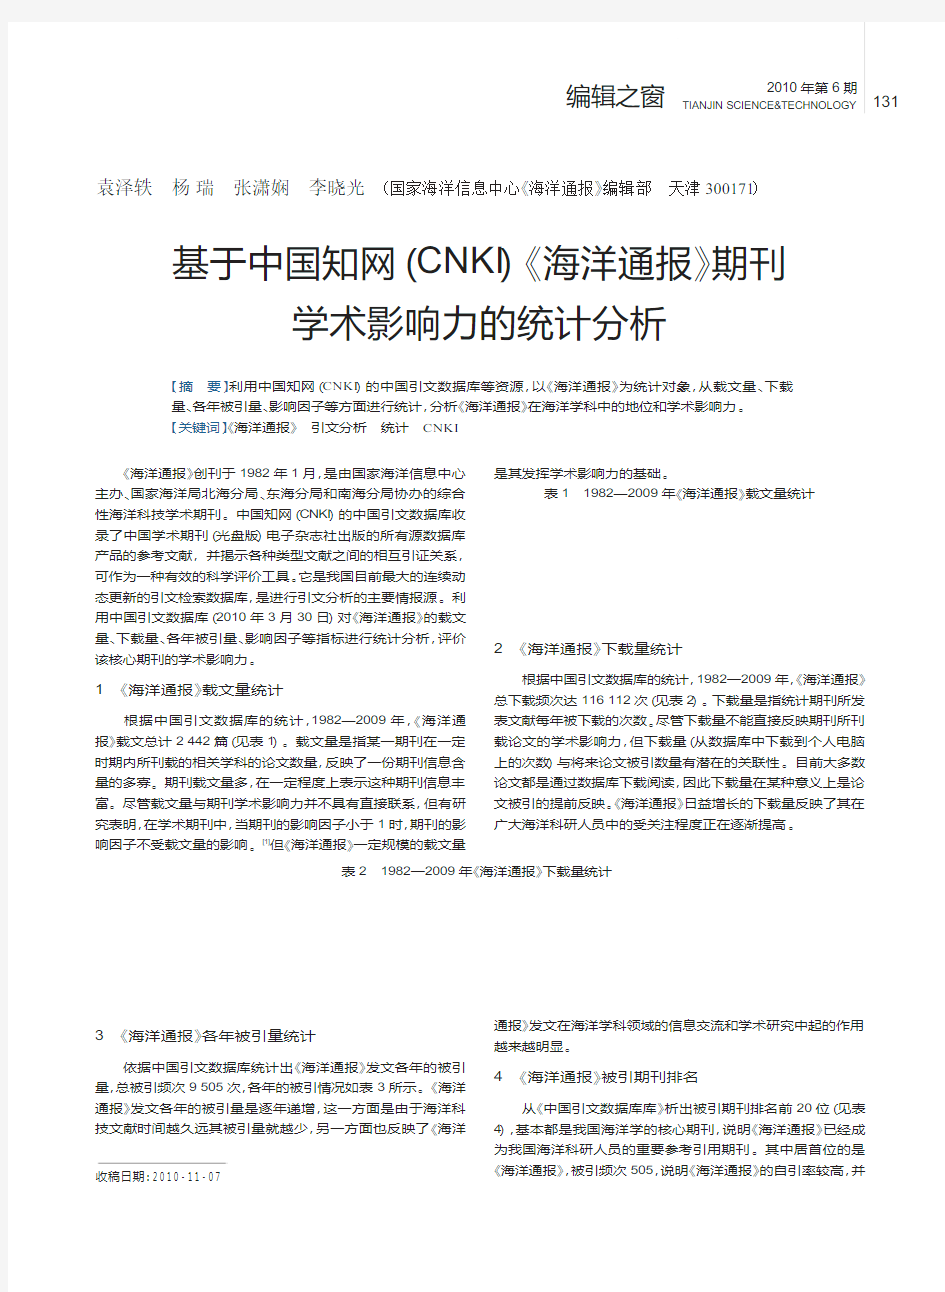 基于中国知网_CNKI_海洋通报_期刊学术影响力的统计分析